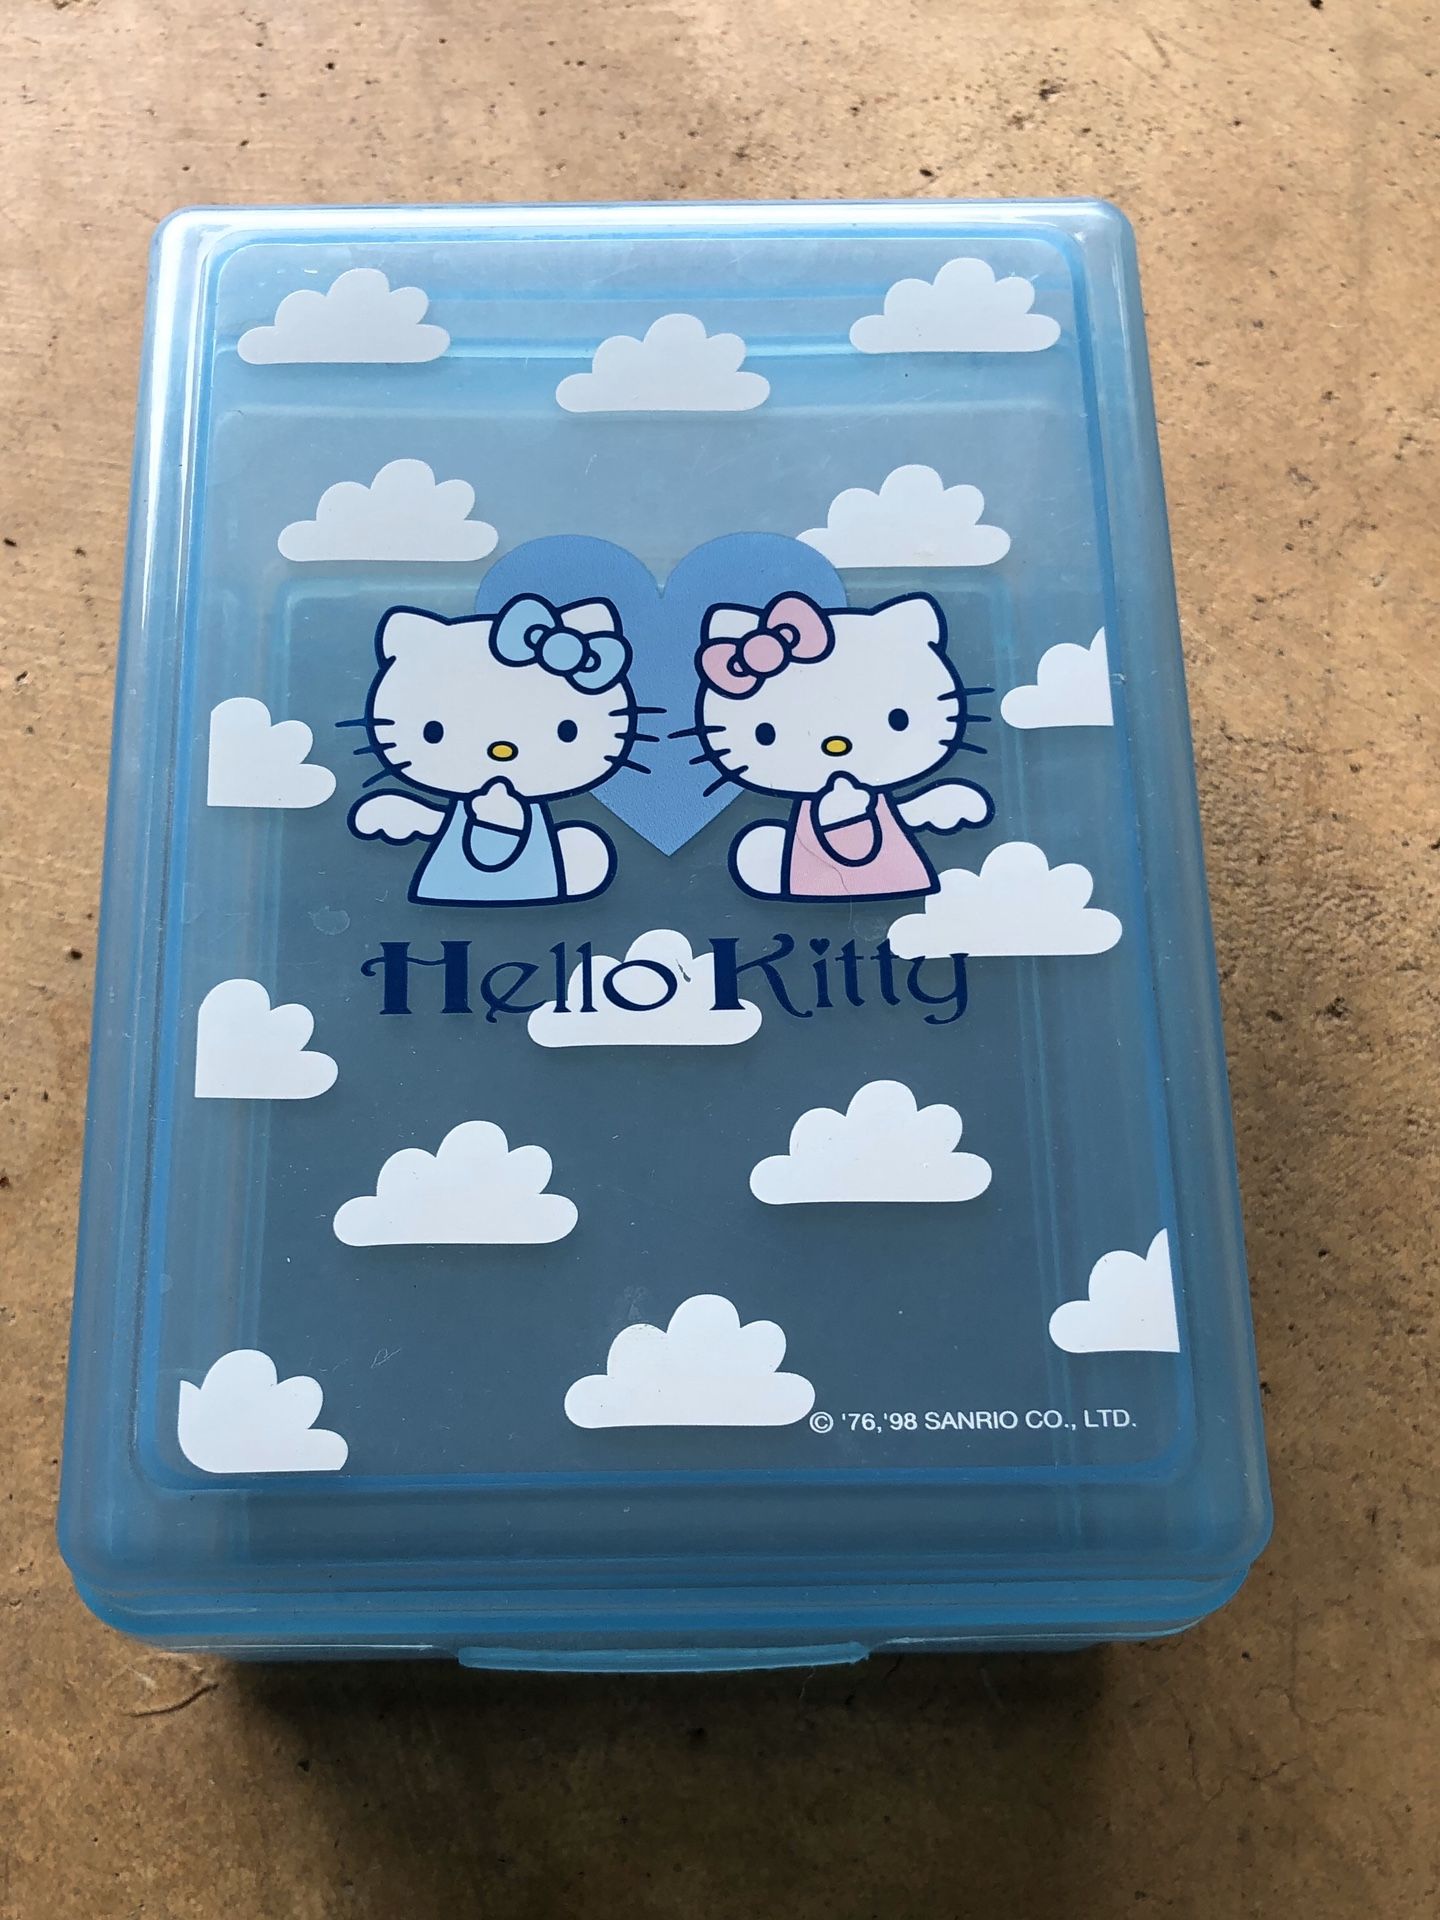 San Rio Hello Kitty storage box